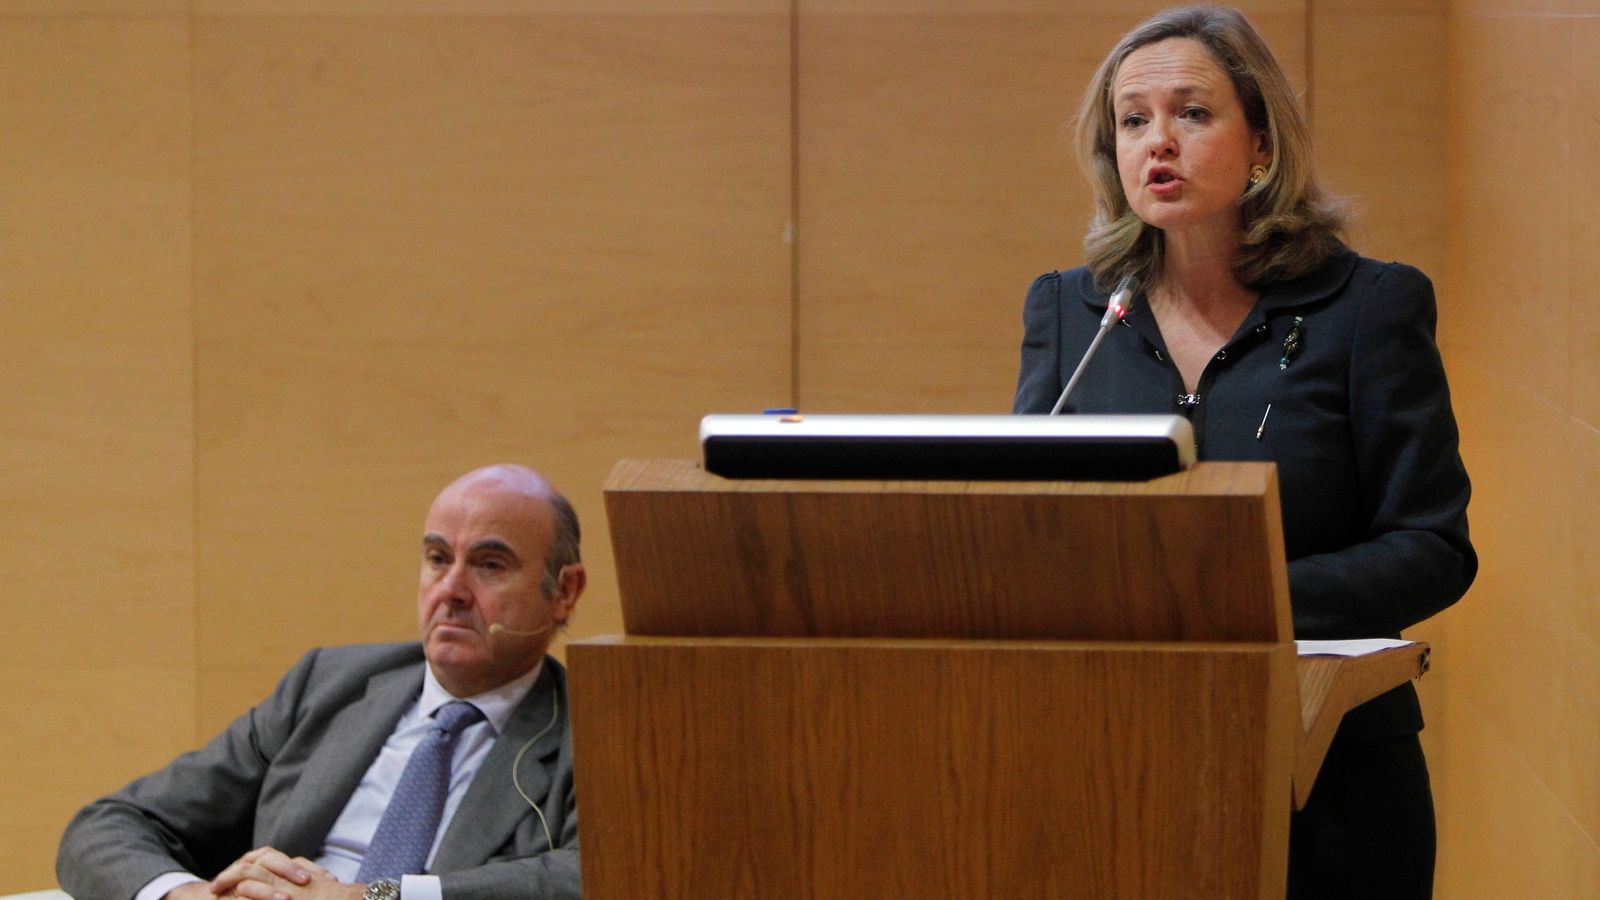 Foto: La ministra de económia, Nadia Calviño, junto al exiministro y vicepresidente del BCE, Luis de Guindos (Efe)